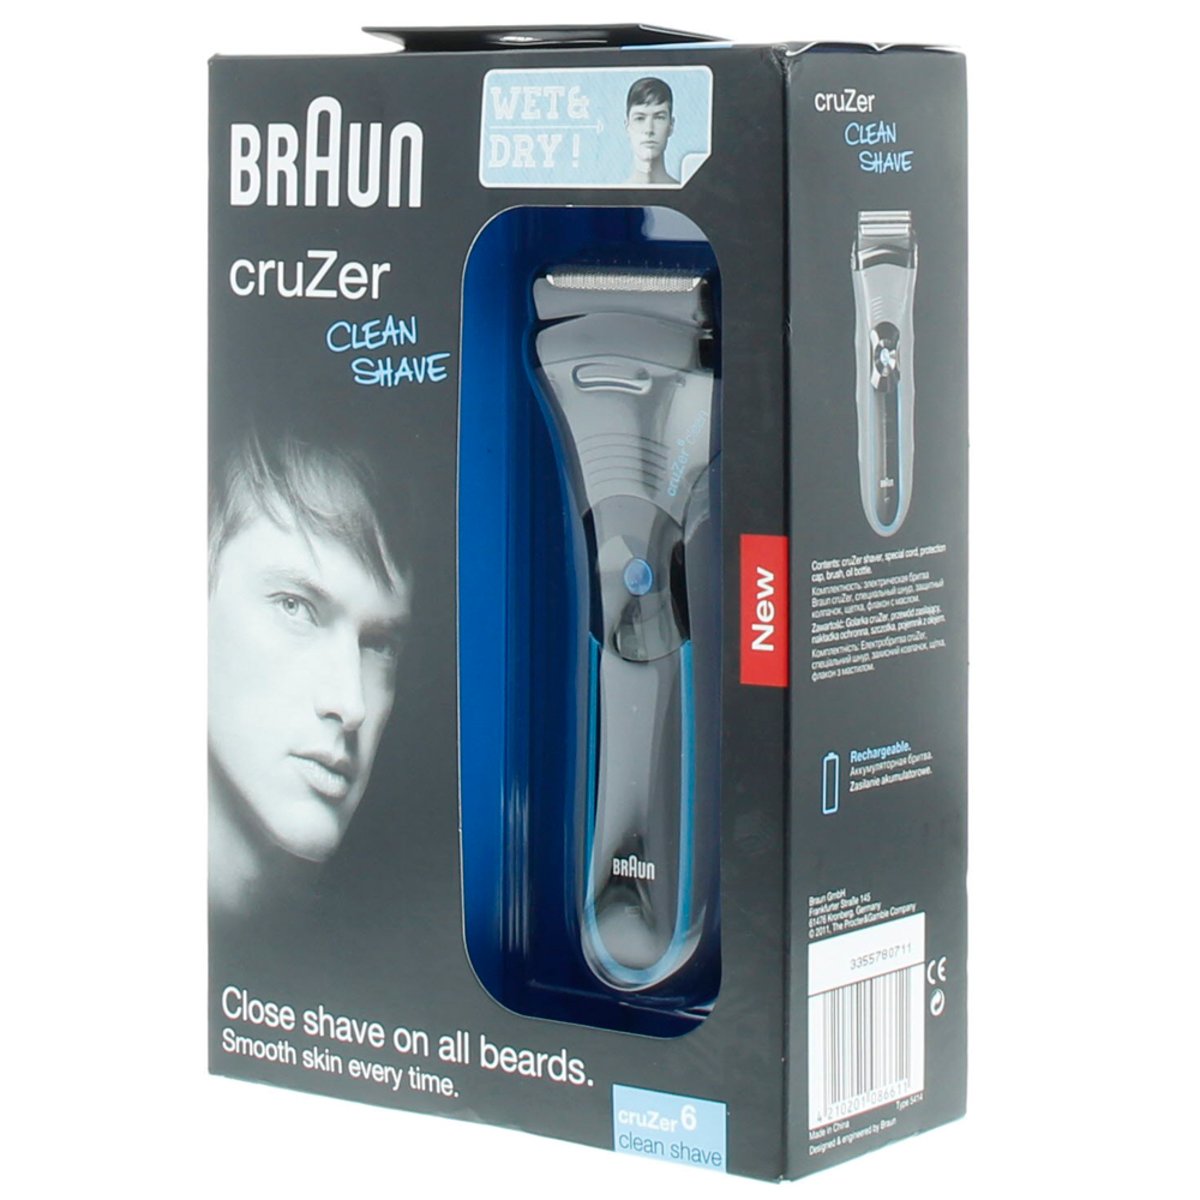 Braun Cuzer6 Shaver Wet & Dry 5414